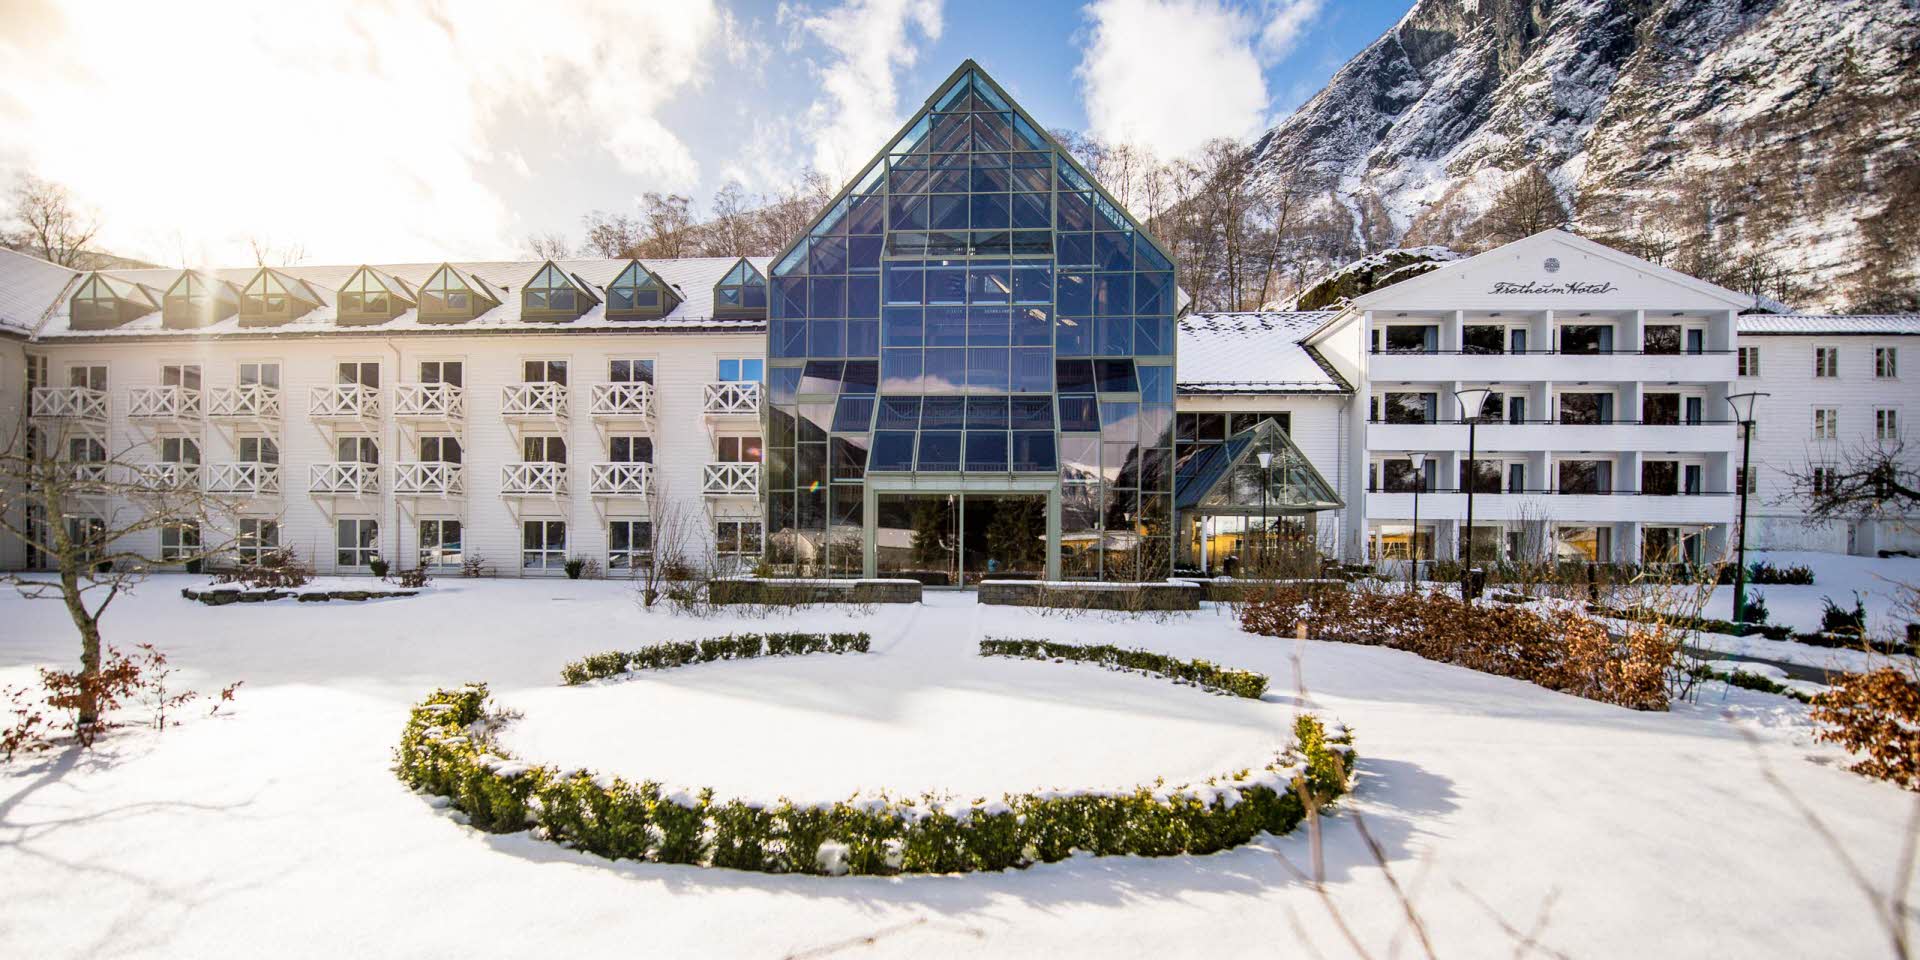 Fretheim Hotel sett fra vegen på vinteren med snø i hagen